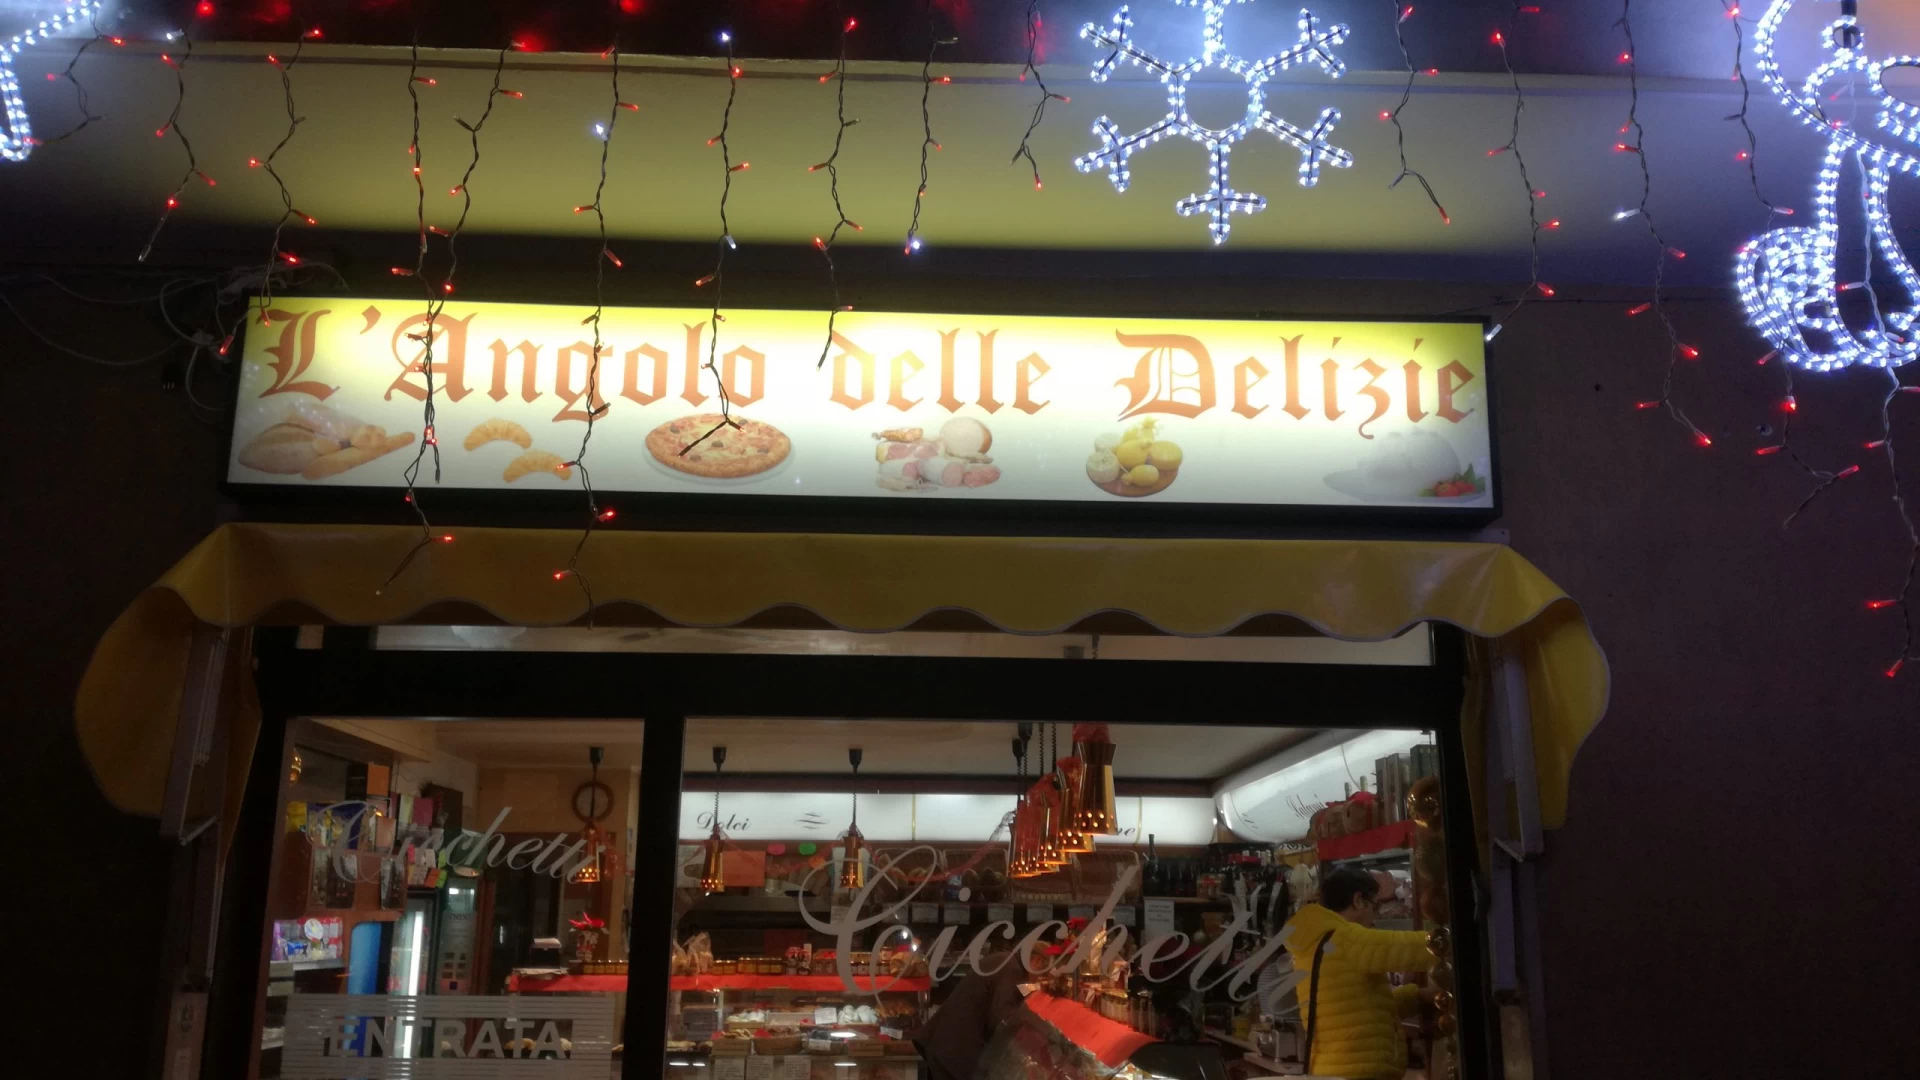 Il Natale diventa tradizione con i panettoni artigianali Cicchetti. Acquistabili anche presso il punto vendita dell’Angolo delle Delizie ad Isernia.